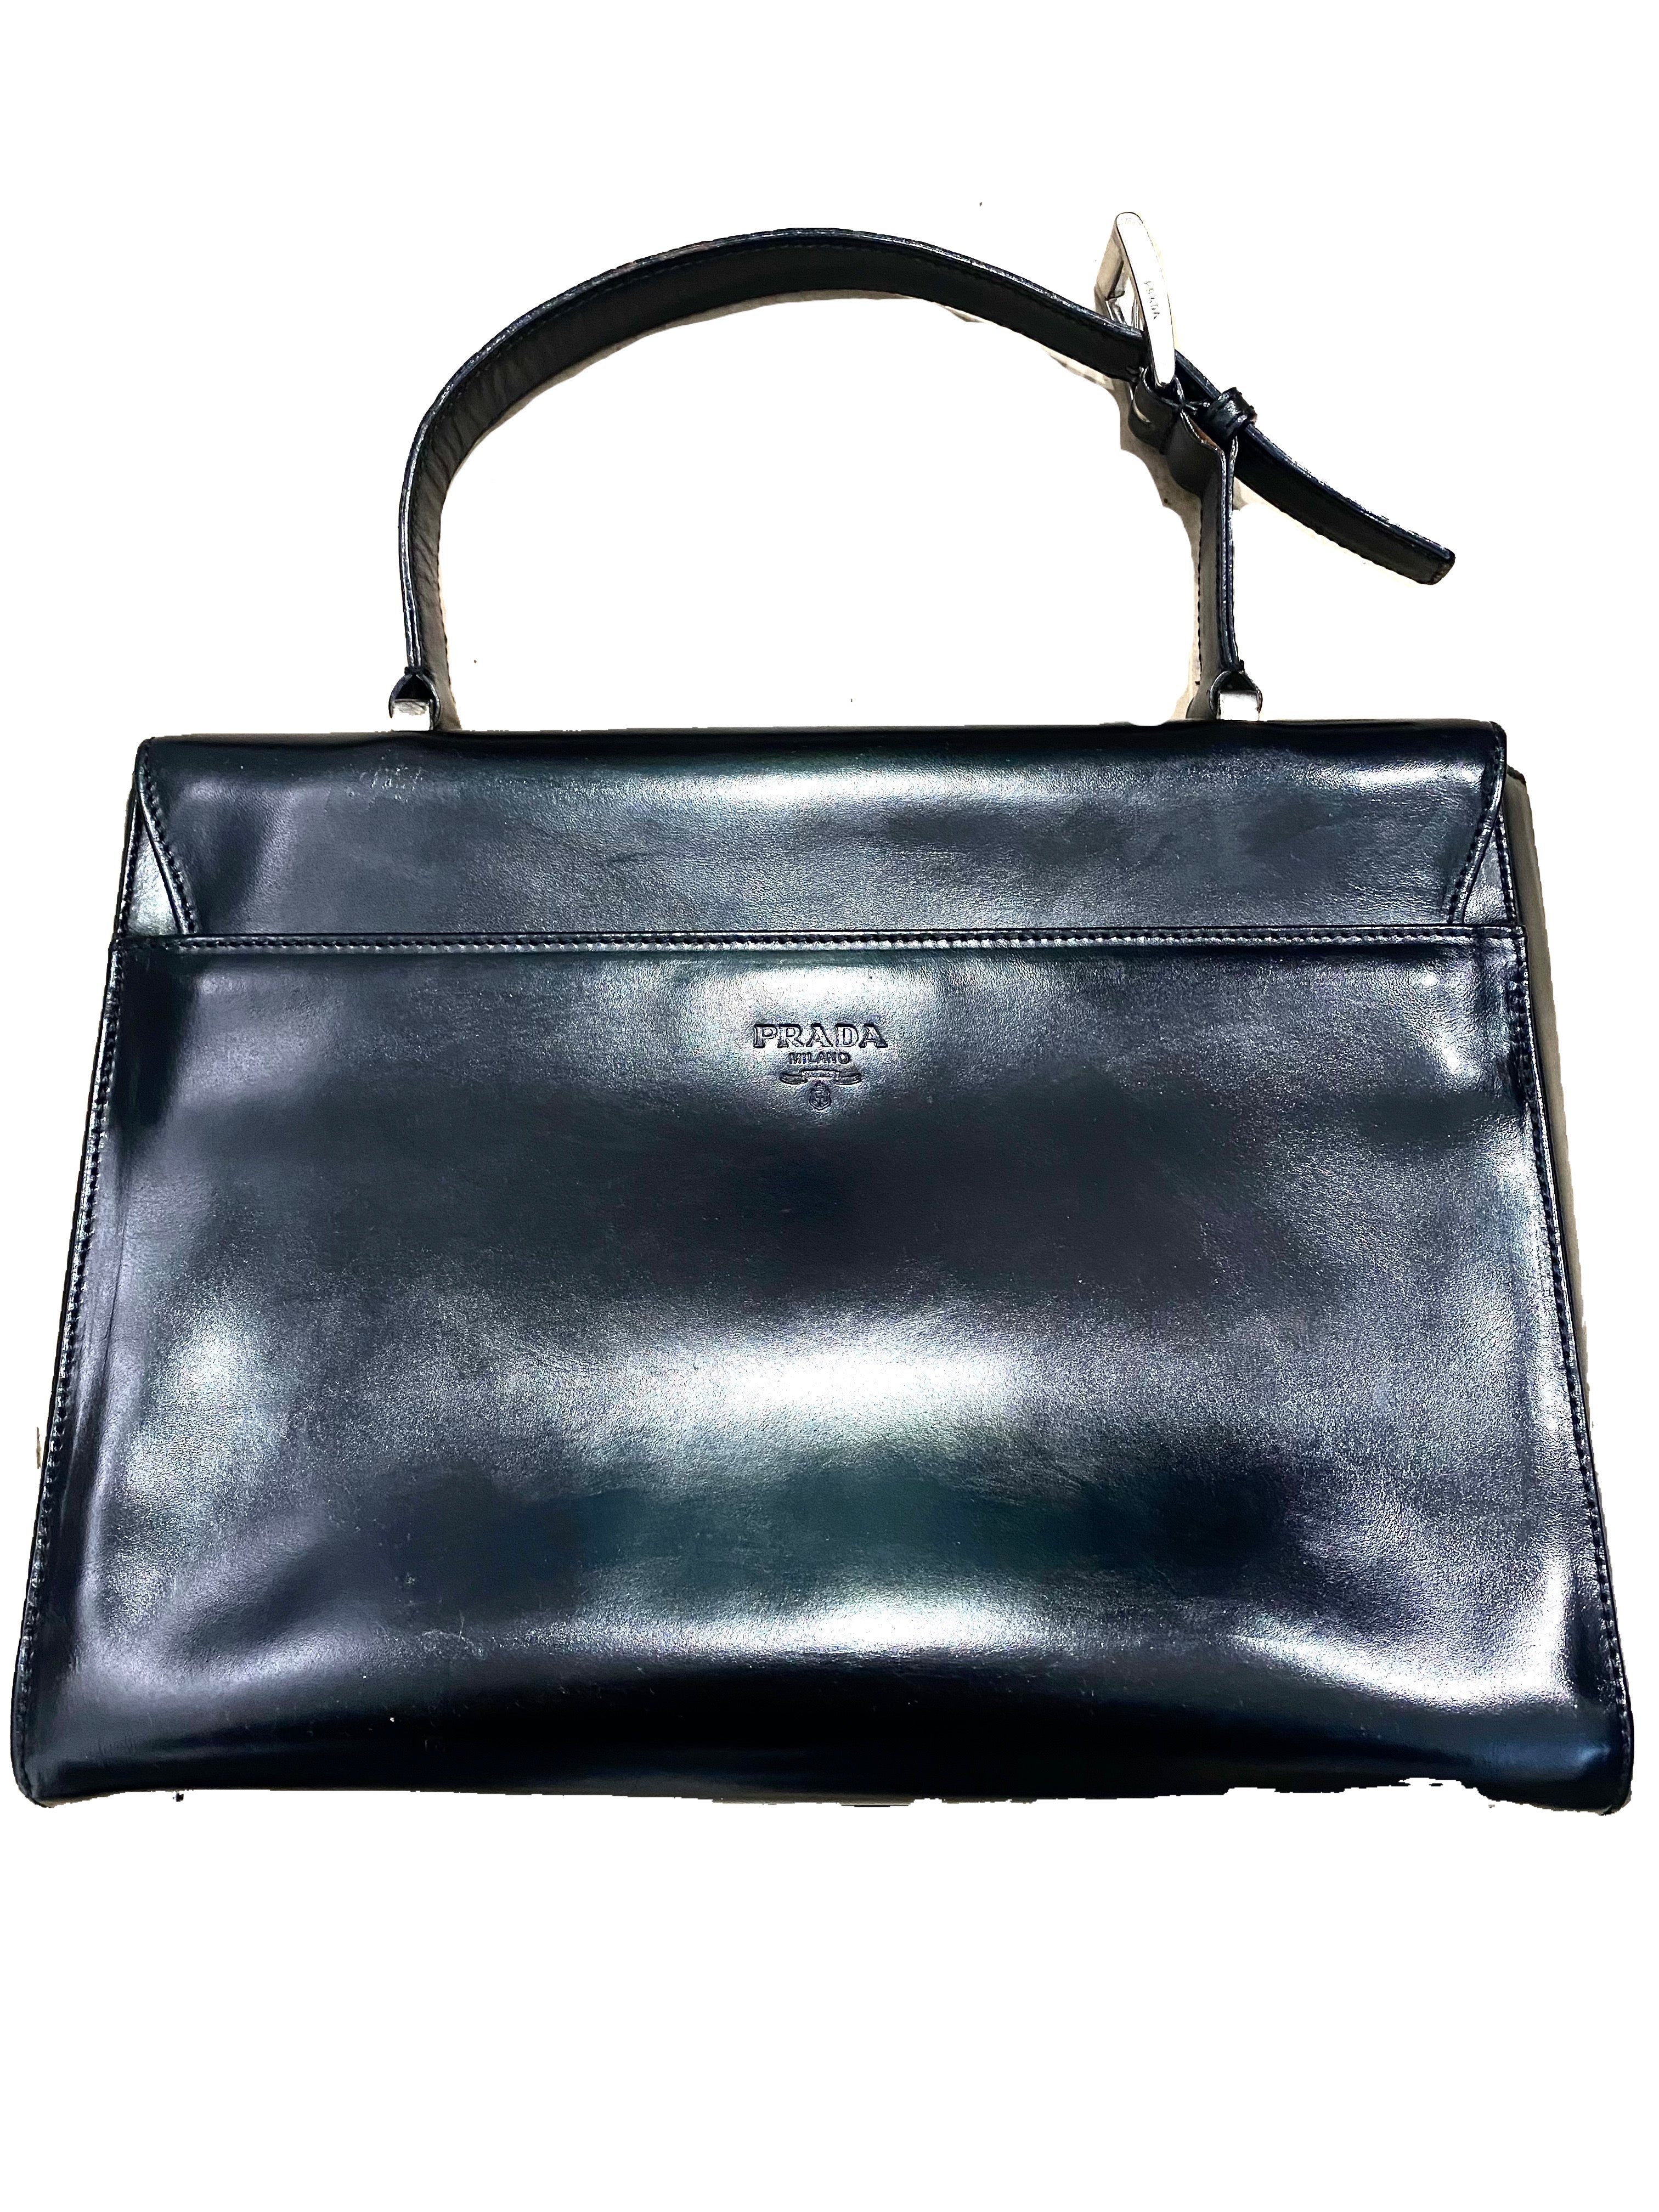 Prada Black Patent Leather Gaufre Ruched Shoulder Bag Tote – Ladybag  International